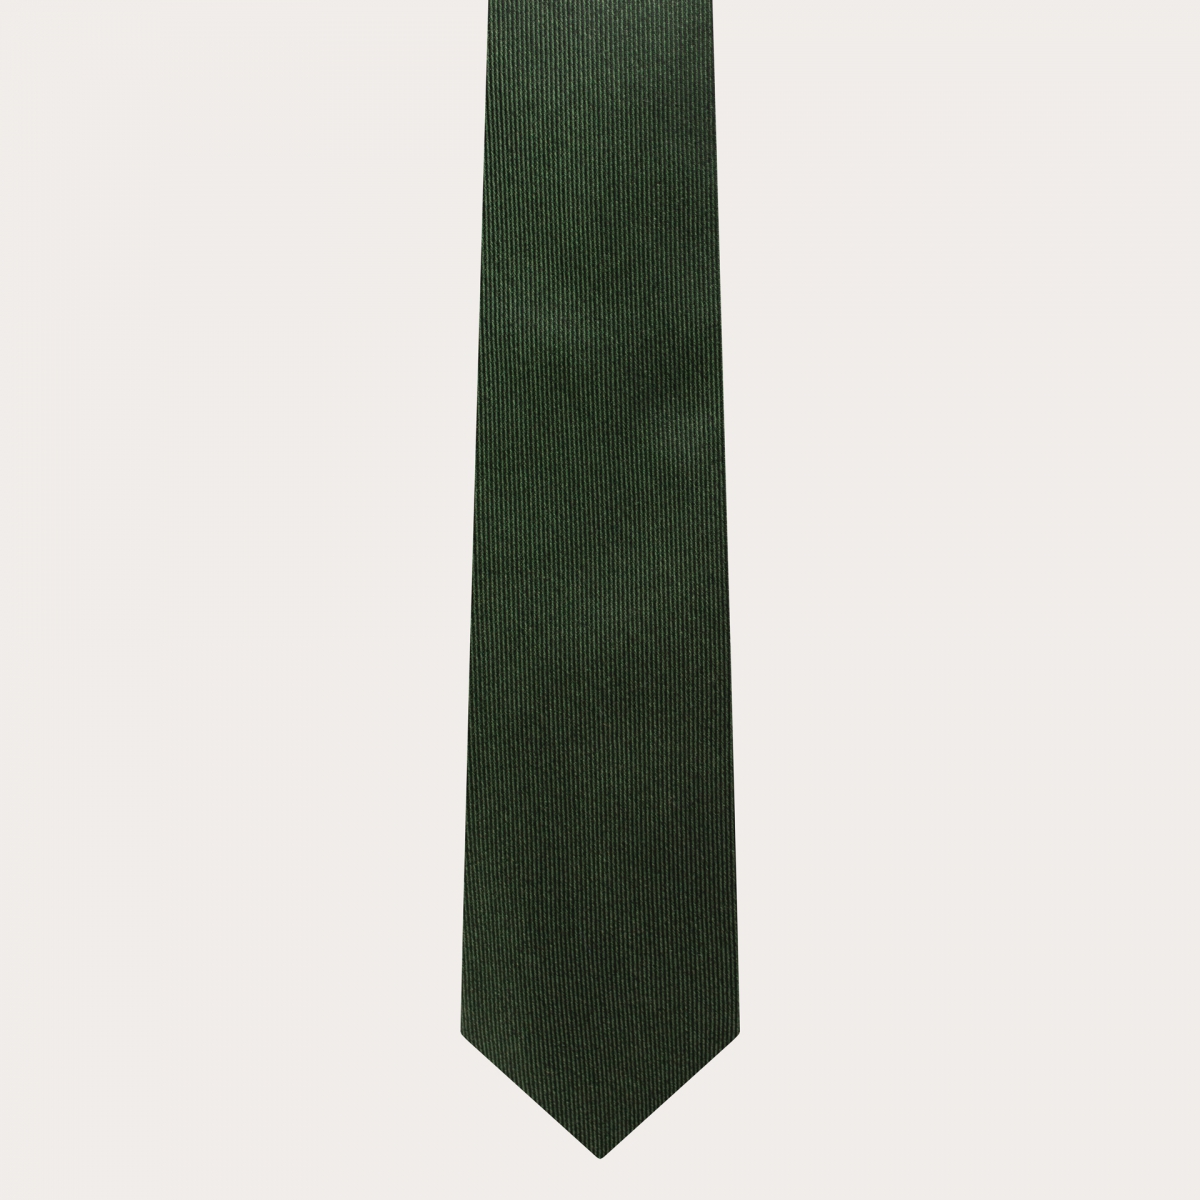 Cravate élégante en soie vert forêt